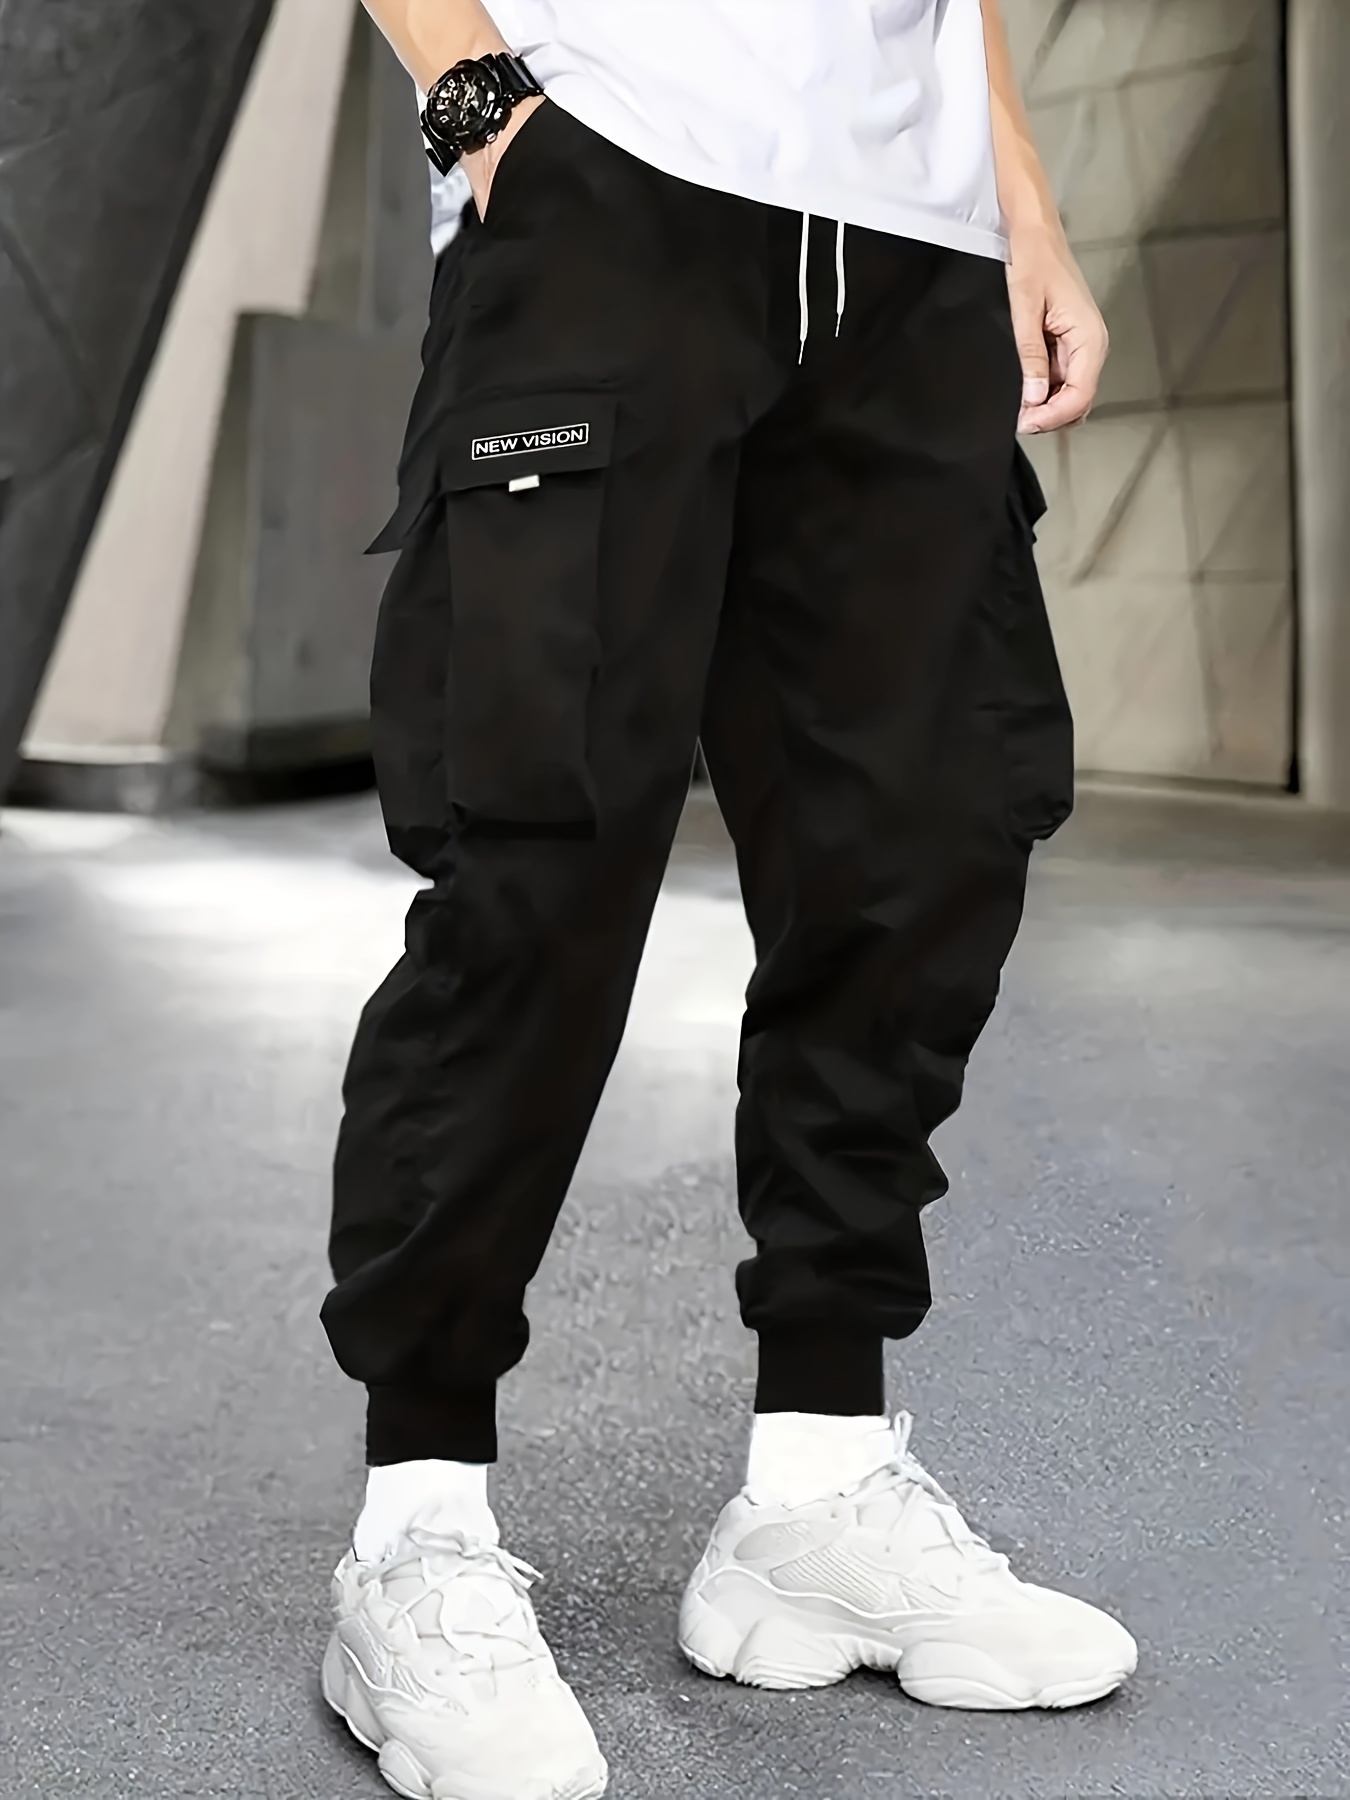 OKGD Plus Size Black Grey Sweatpants Men Streetwear Harem Pants